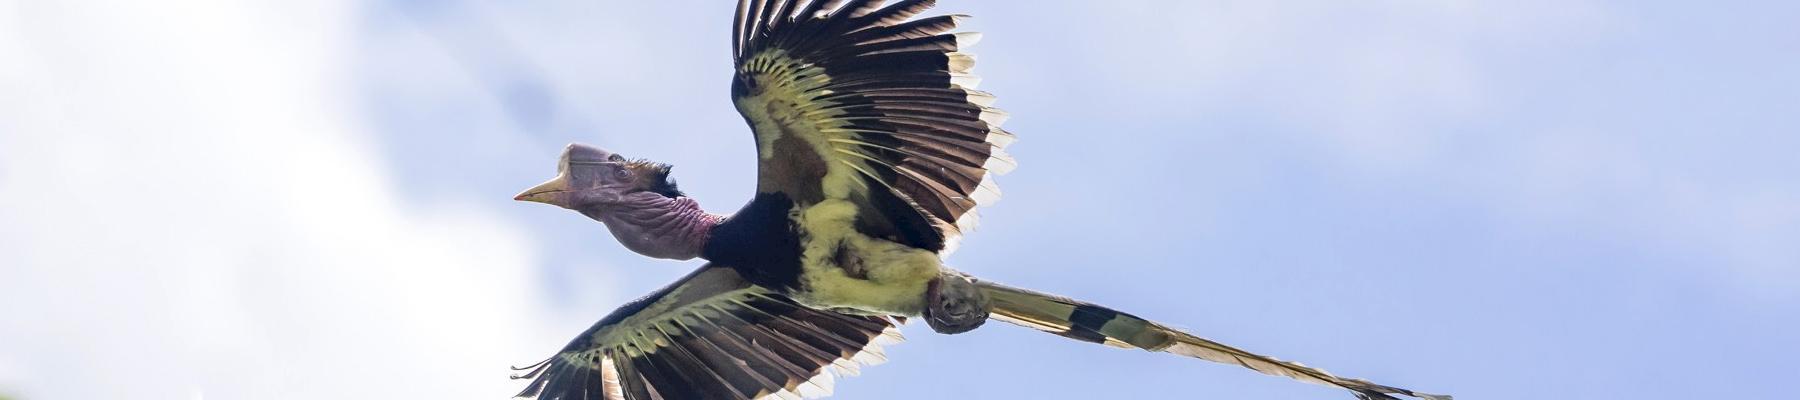 Helmeted Hornbill © Muhammad Alzahri